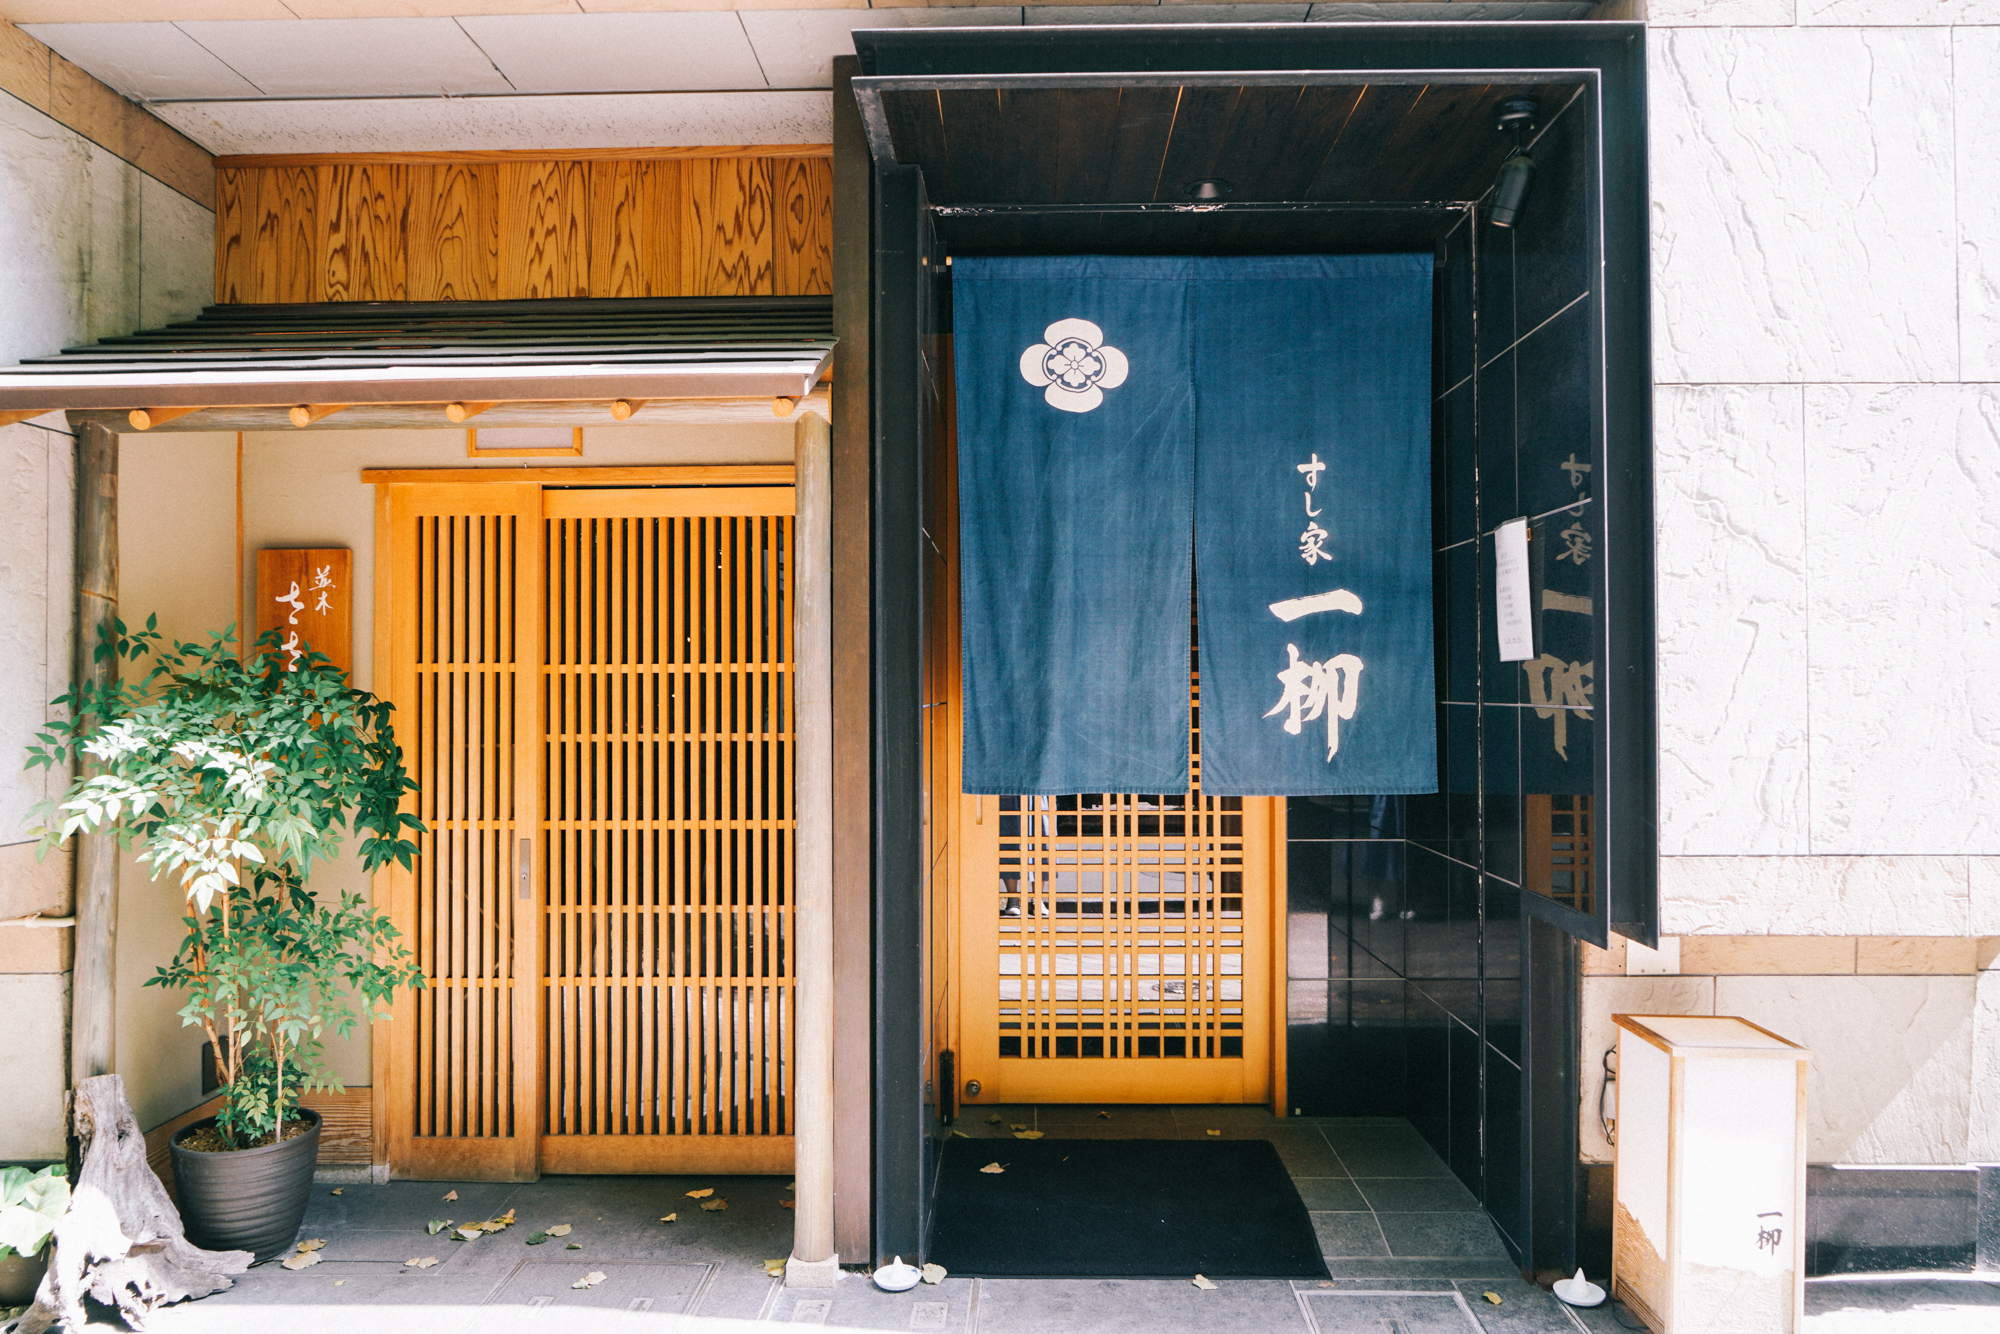 日本 在米其林餐厅体验职人文化 枫行旅世界 穷游专栏